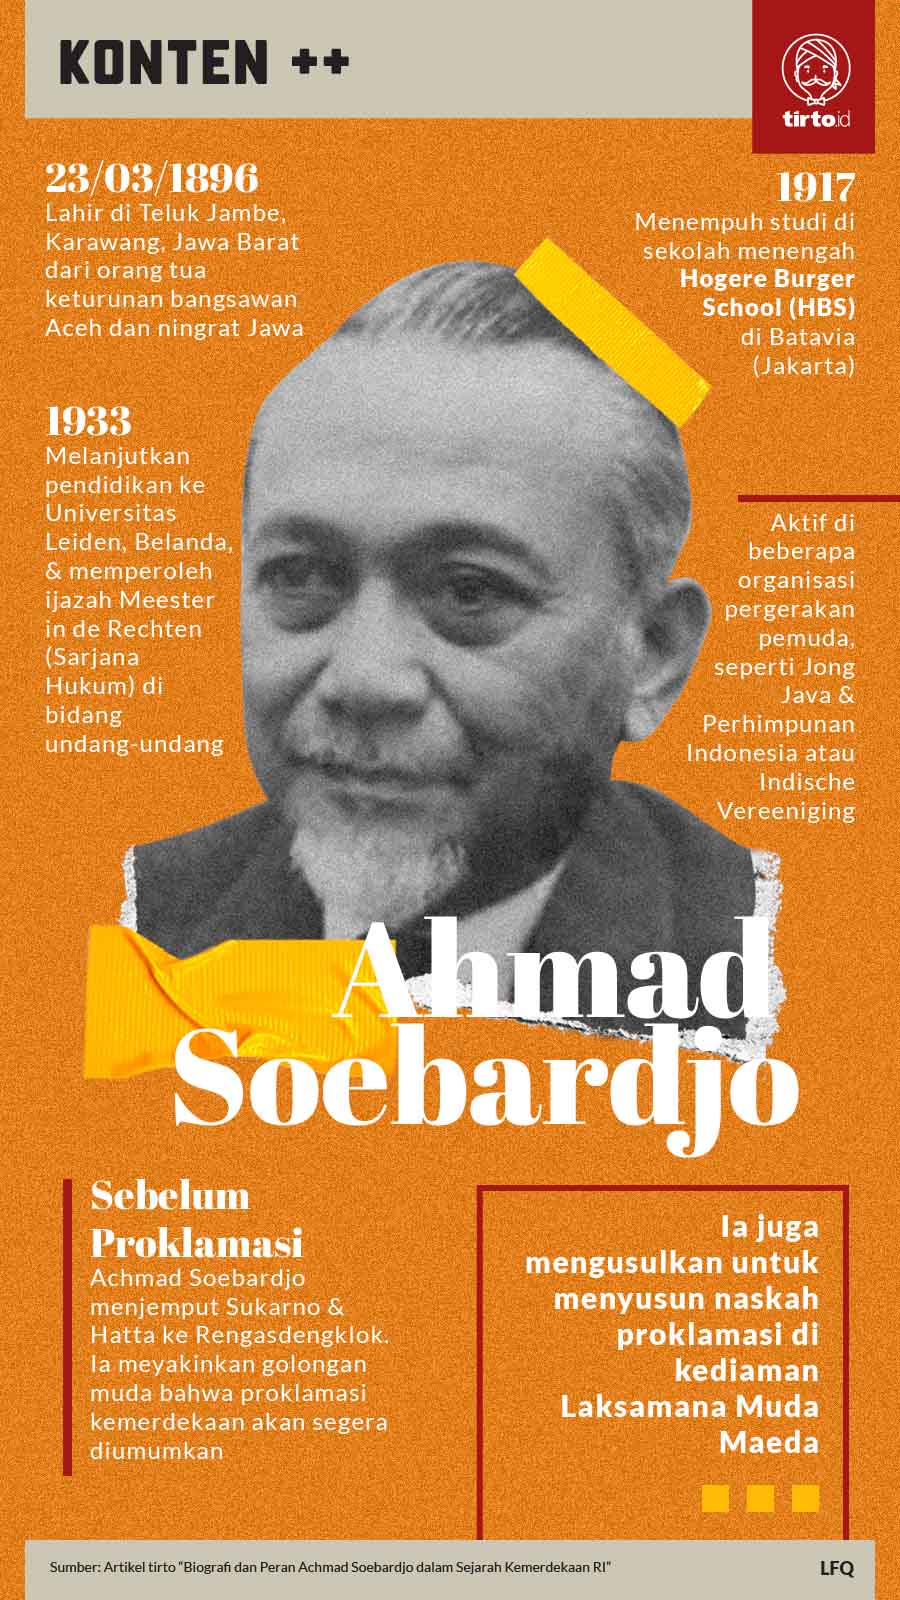 Biografi Dan Peran Achmad Soebardjo Dalam Sejarah Kemerdekaan Ri